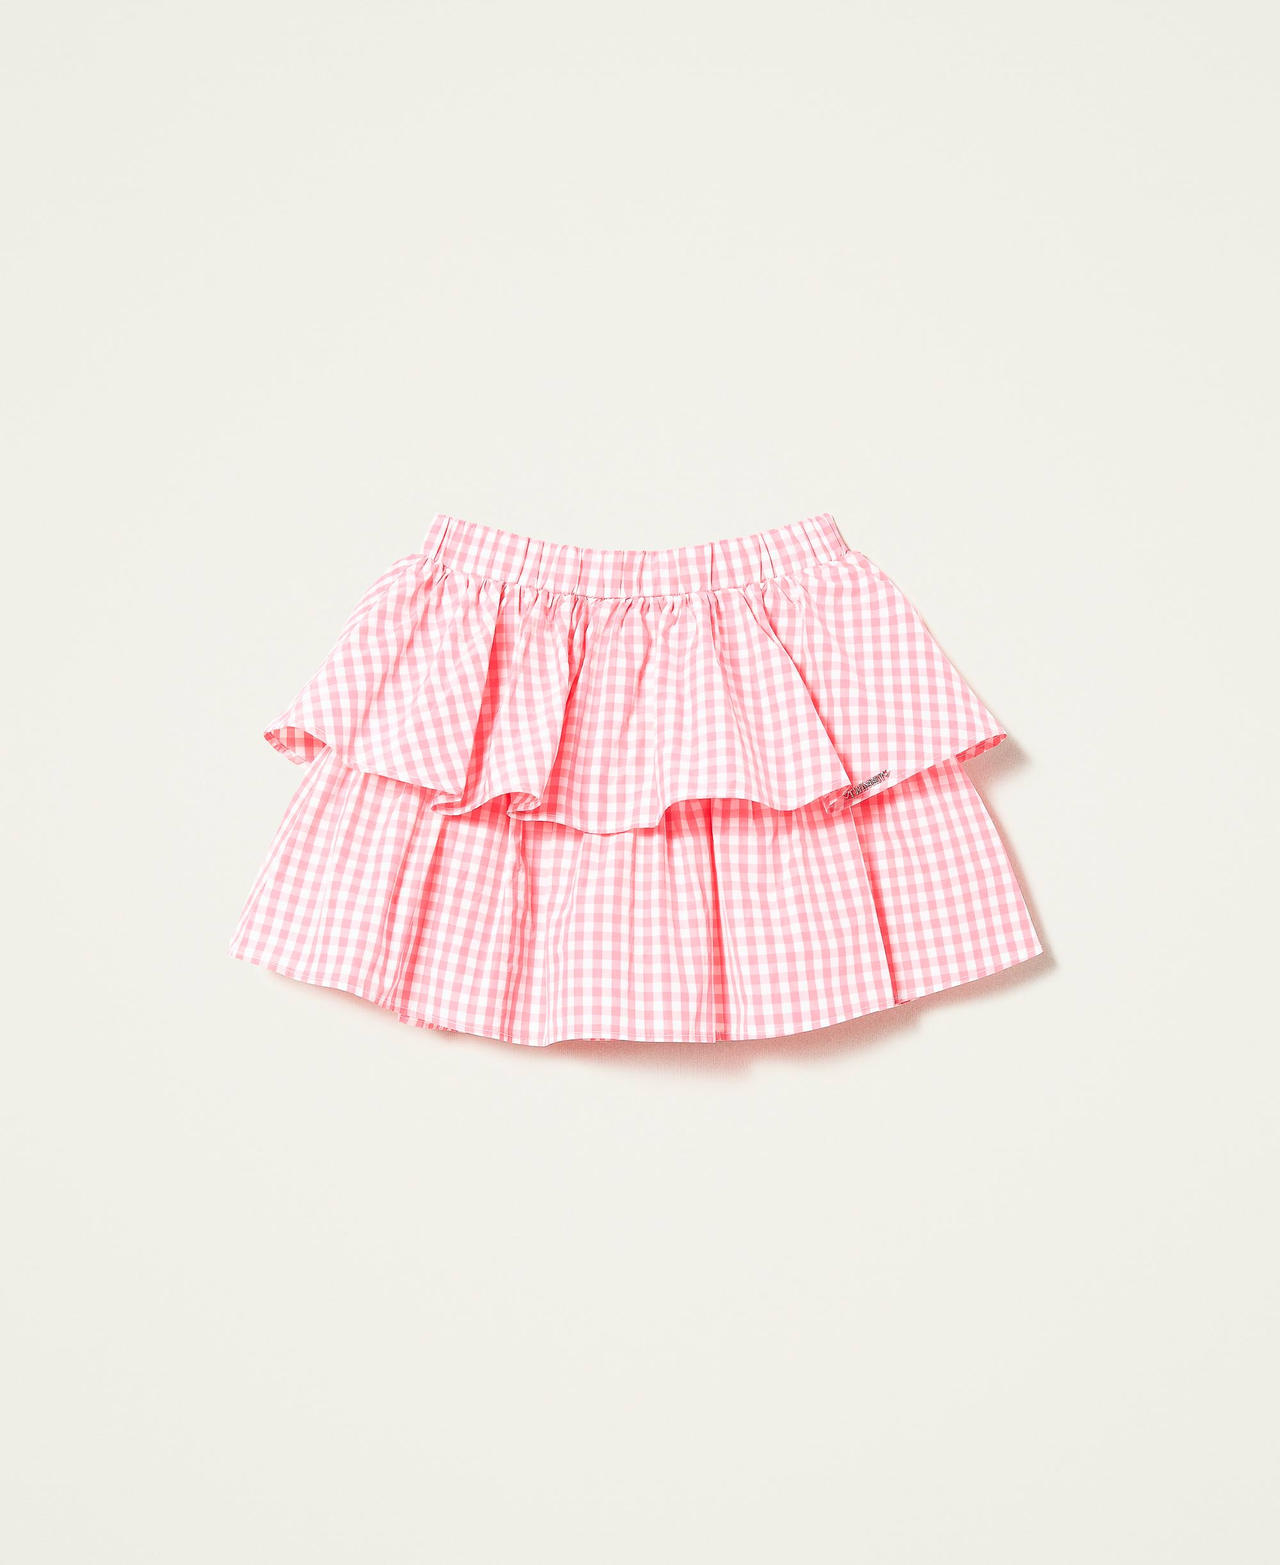 Короткая юбка из тафты в клетку виши Жаккард Виши Розовый Shocking Девочка 221GJ207C-0S